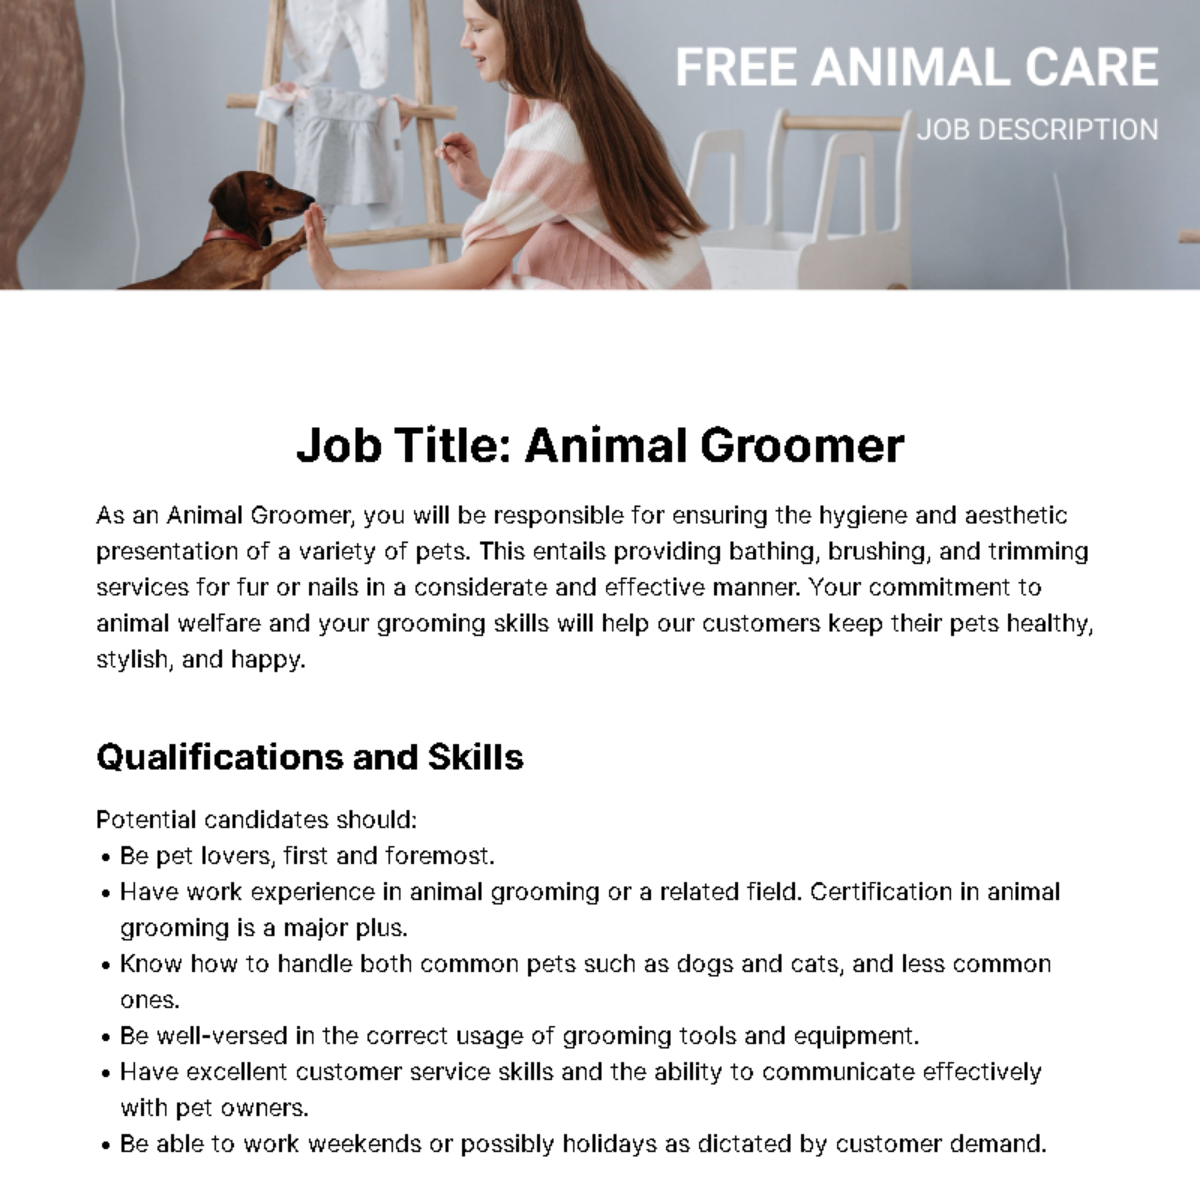 Free Animal Care Job Description Template